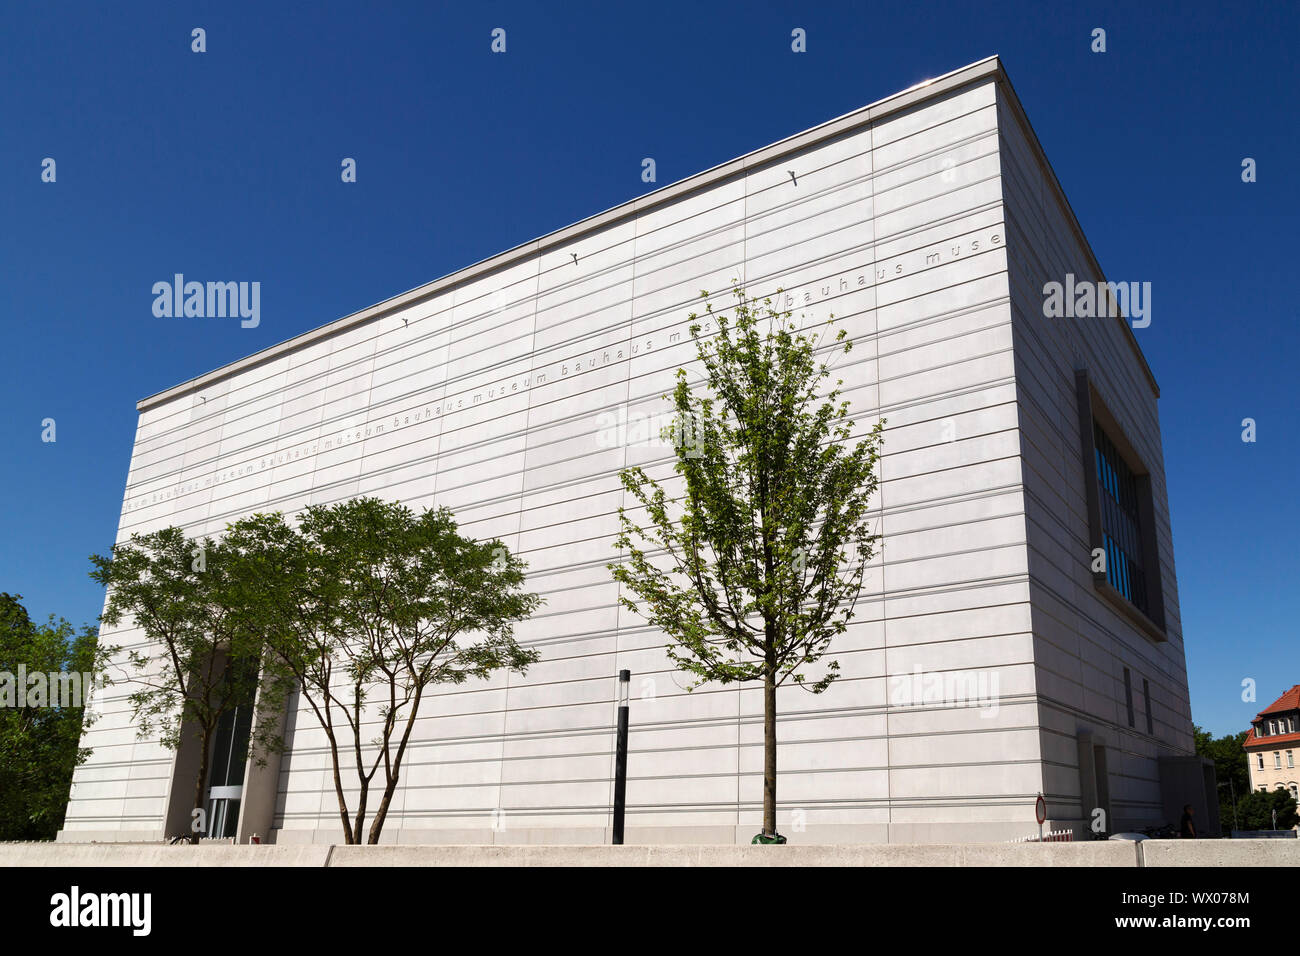 Bäume, die von der Fassade des Bauhaus Museum Weimar, von Heike Hanada, Weimar, Thüringen, Deutschland, Europa konzipiert Stockfoto